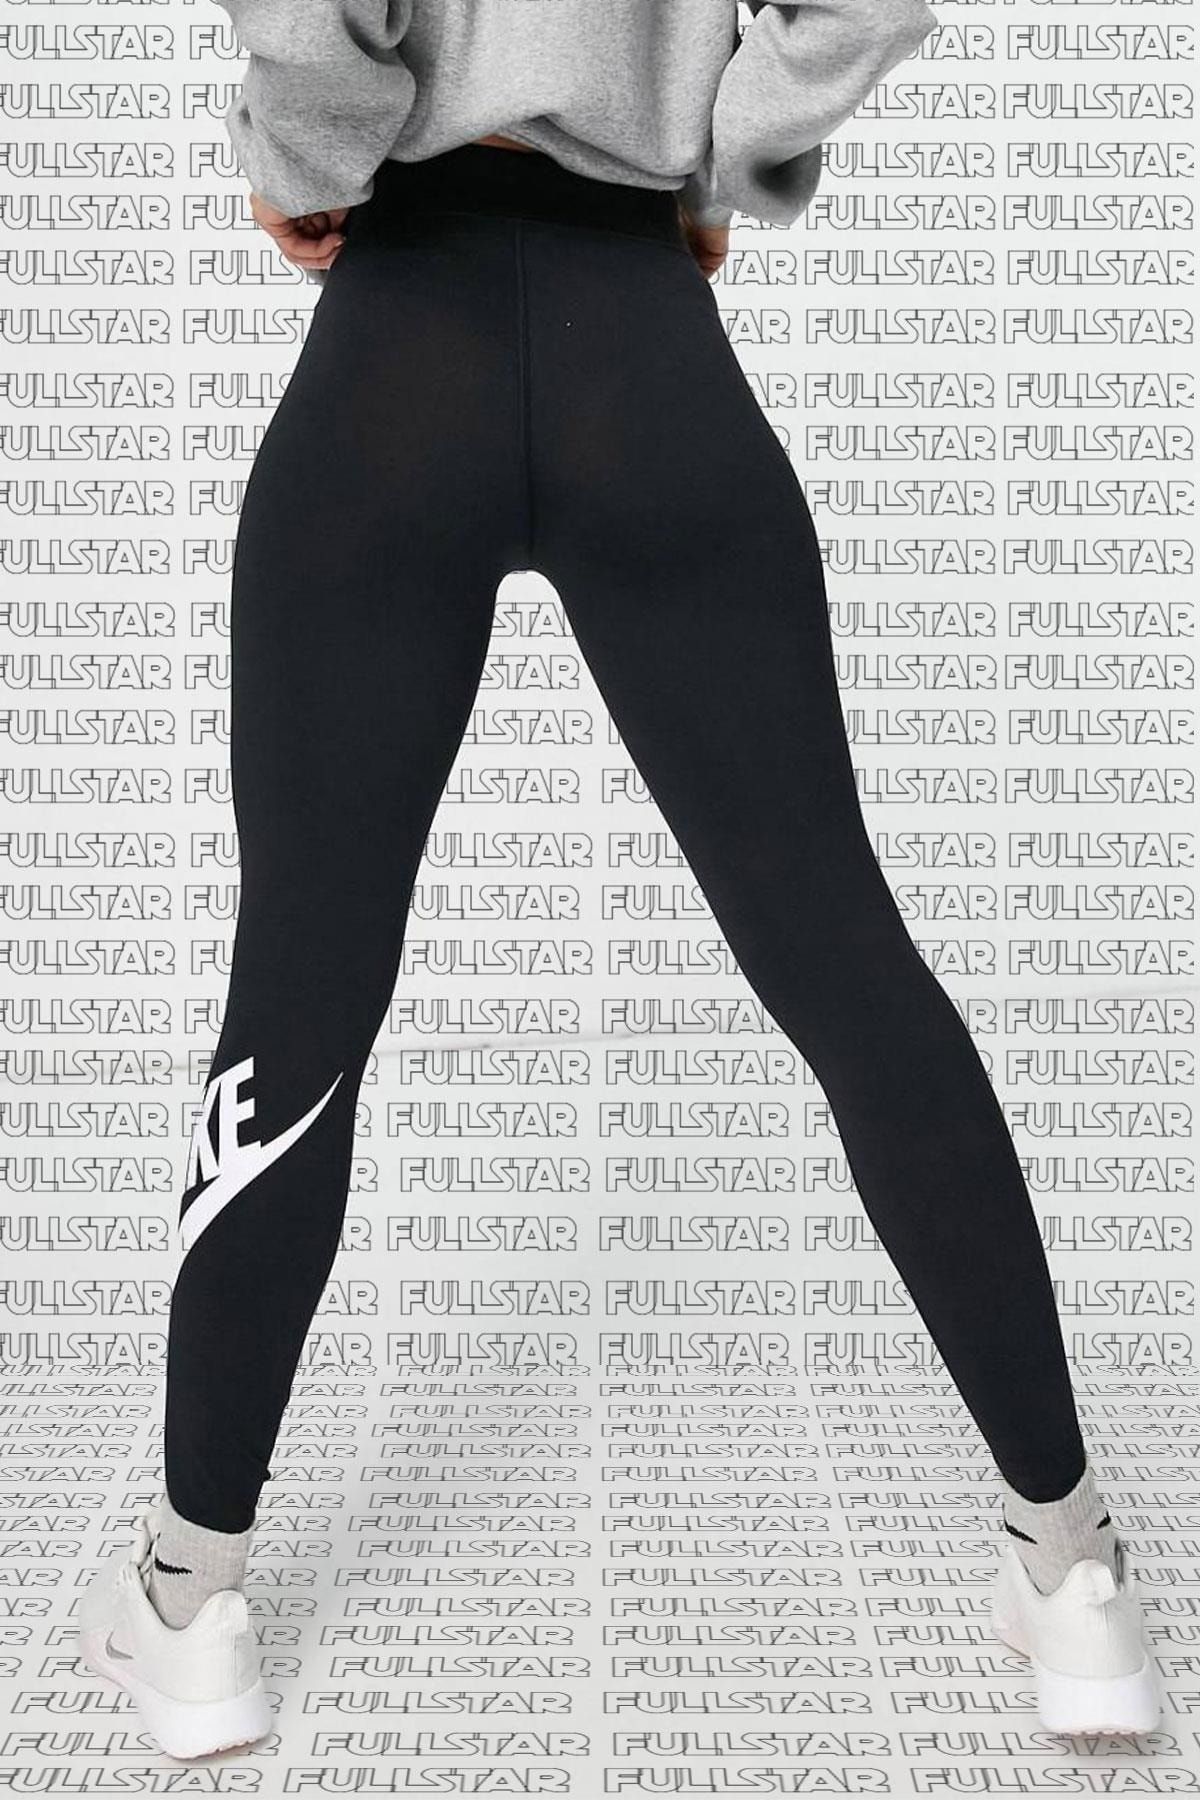 Nike Leggings High Rise Yüksek Belli Pamuk Polyester Ince Siyah Tayt Ct  Fiyatı, Yorumları - Trendyol